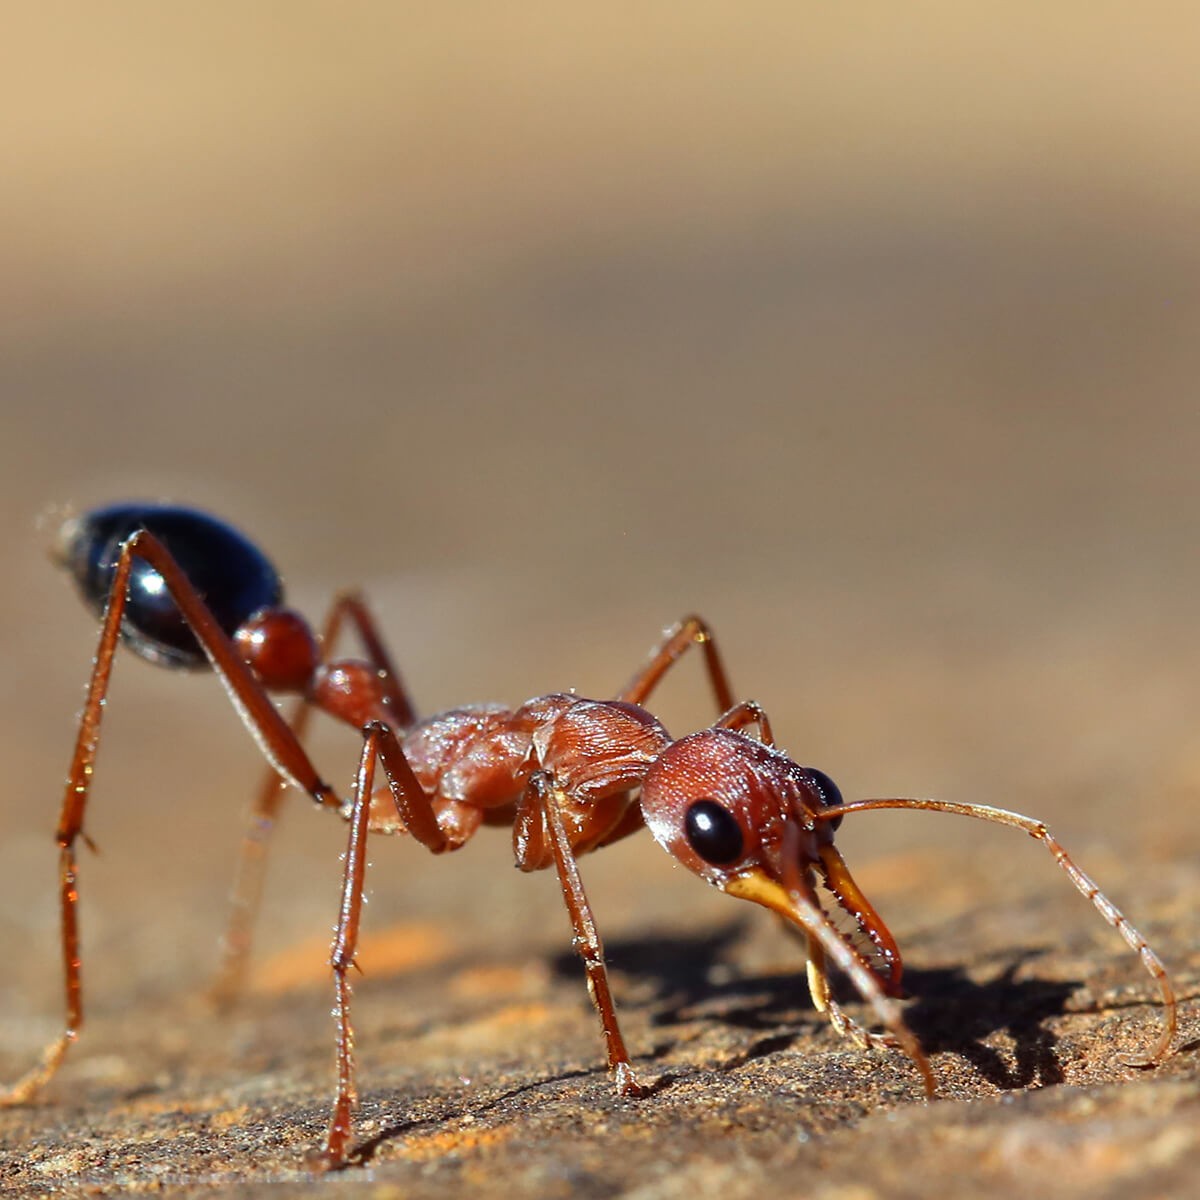 Bull ant